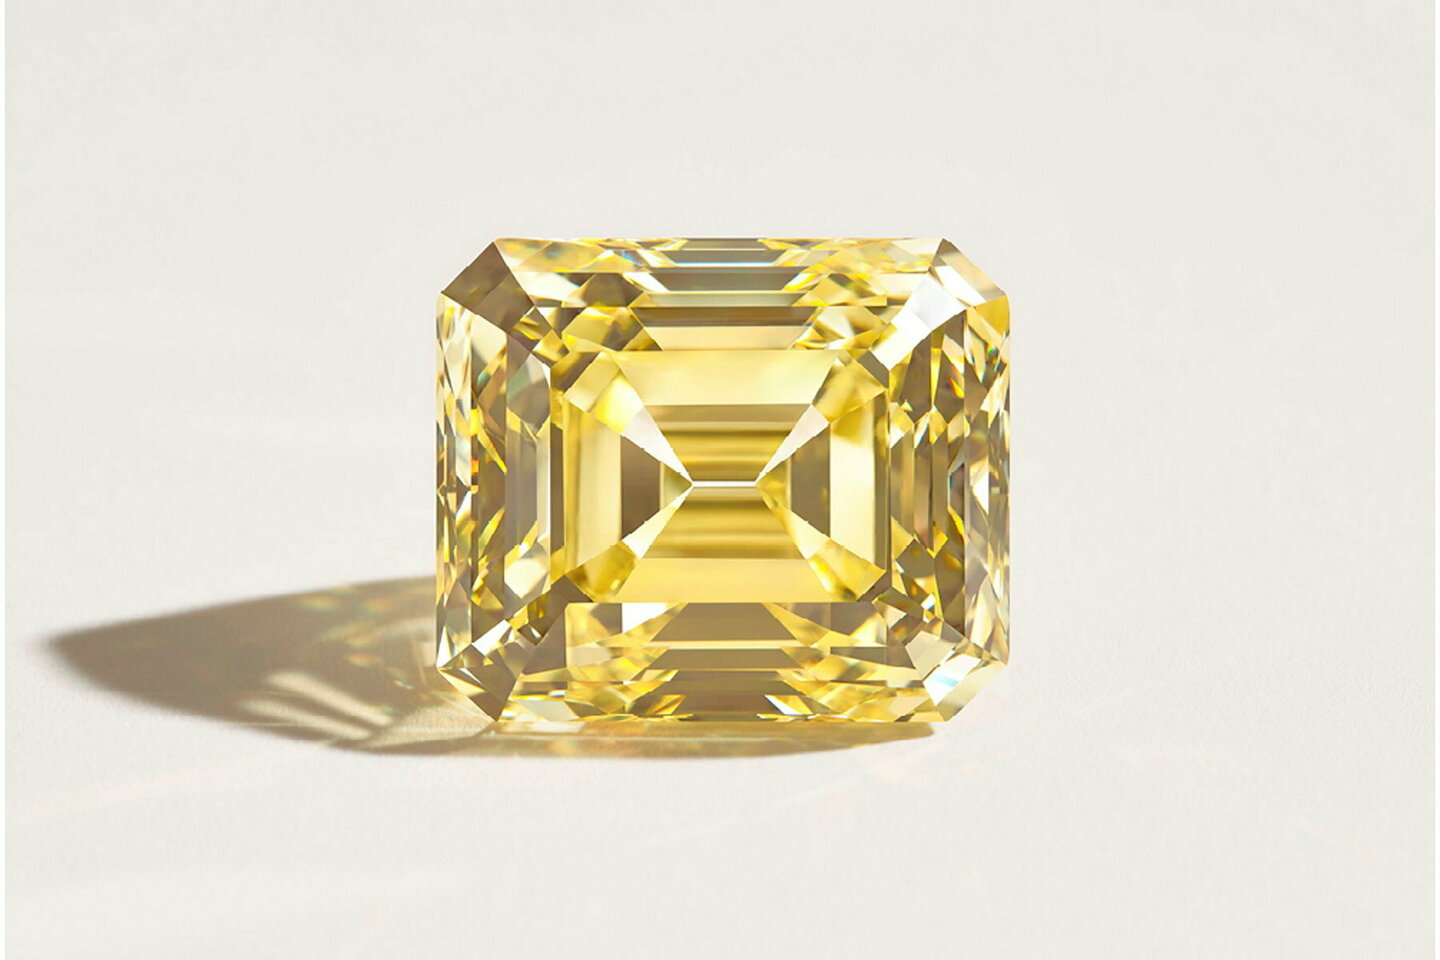 Diamant brut : guide complet sur le diamant extrait des mines